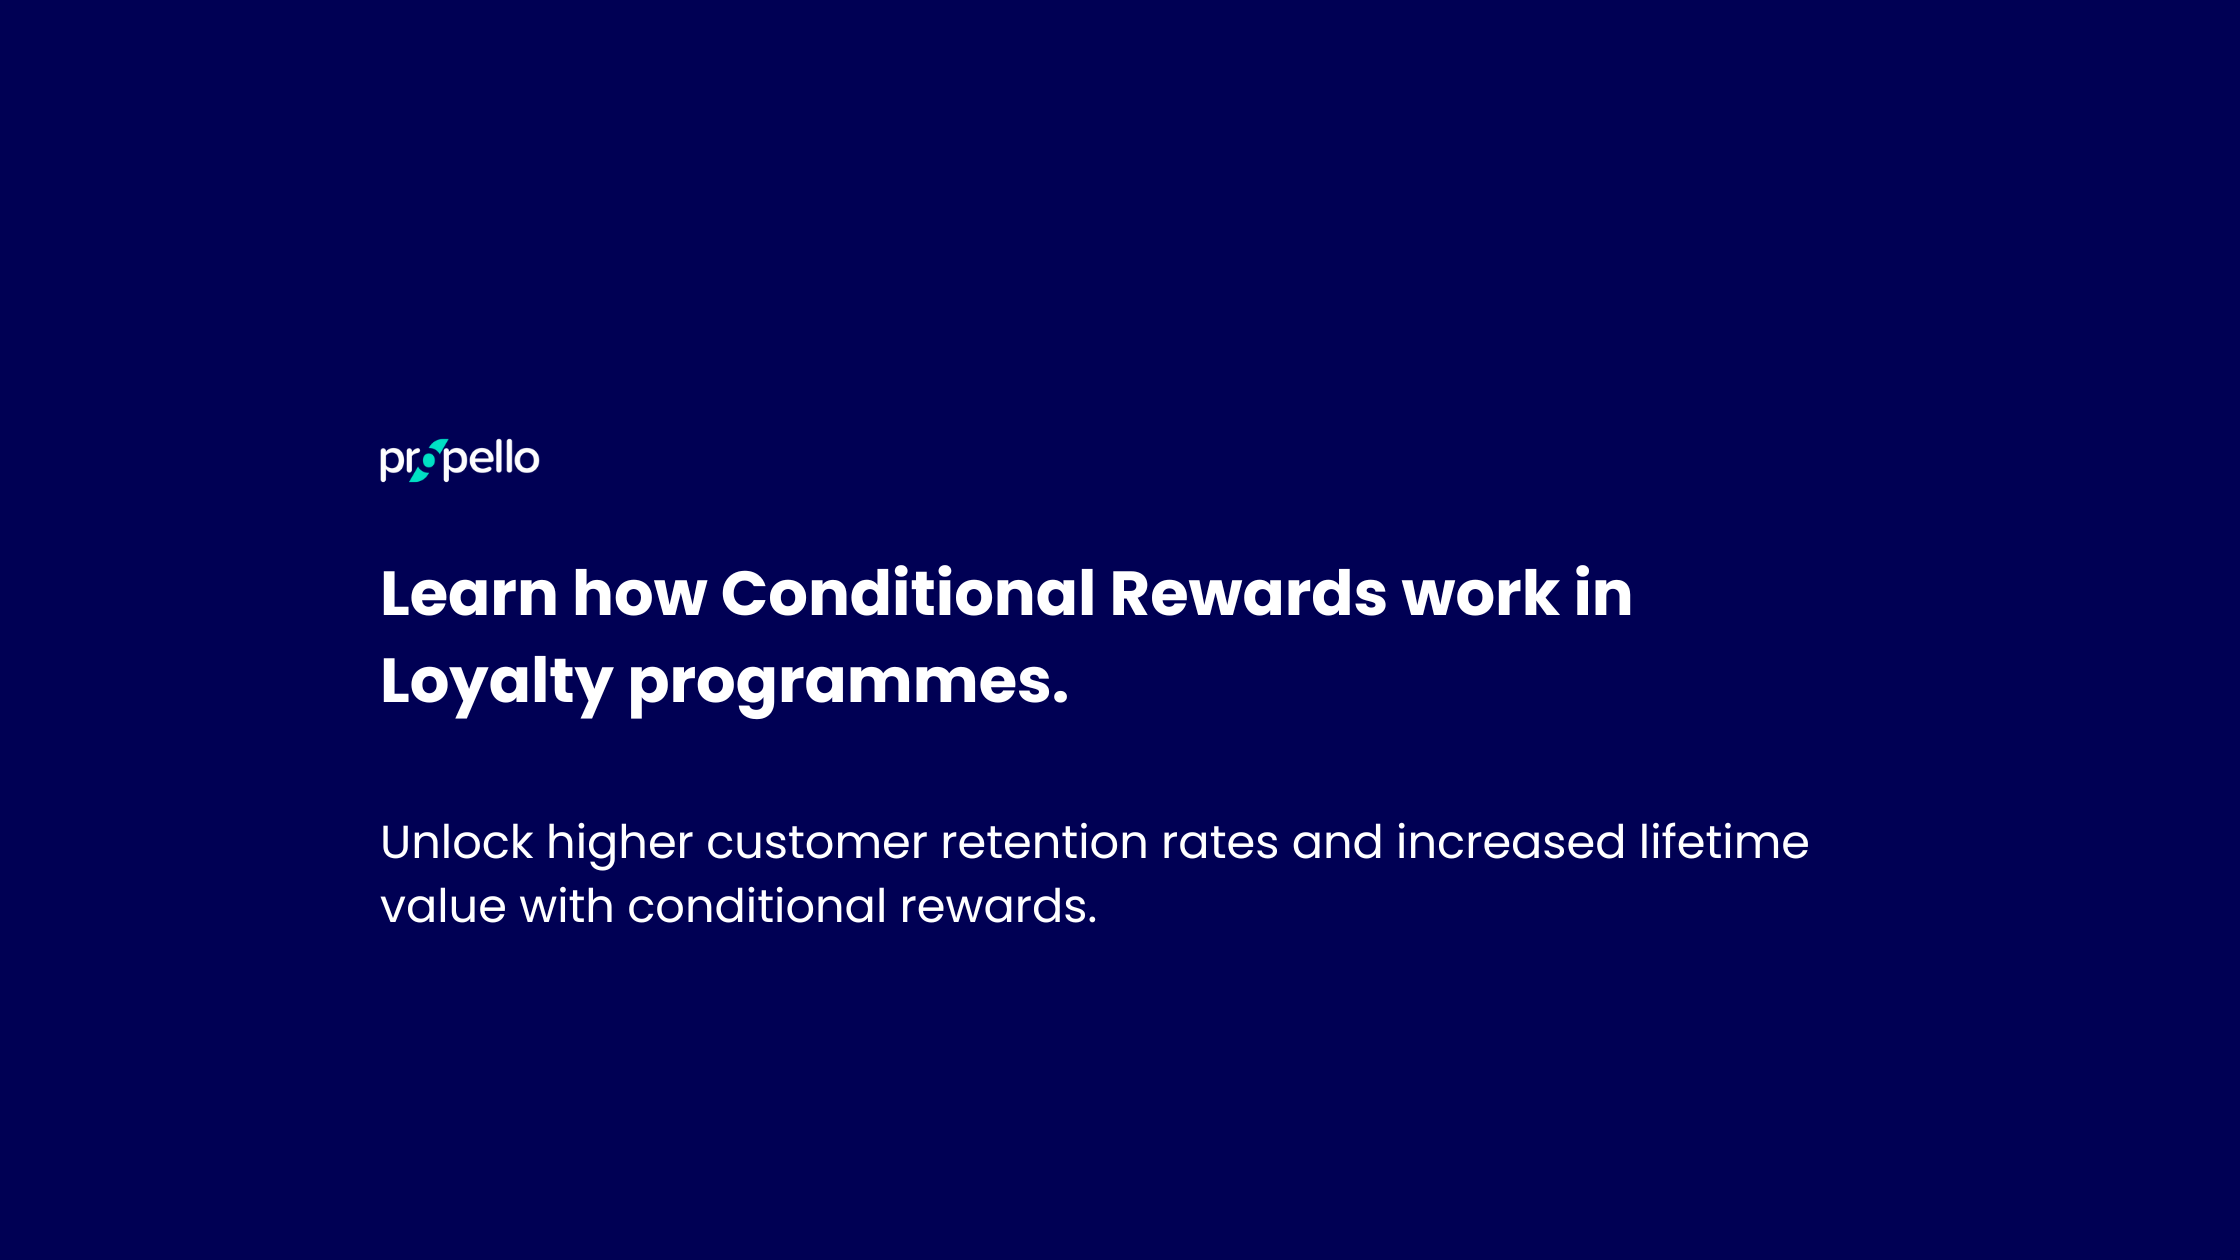 Conditional rewards